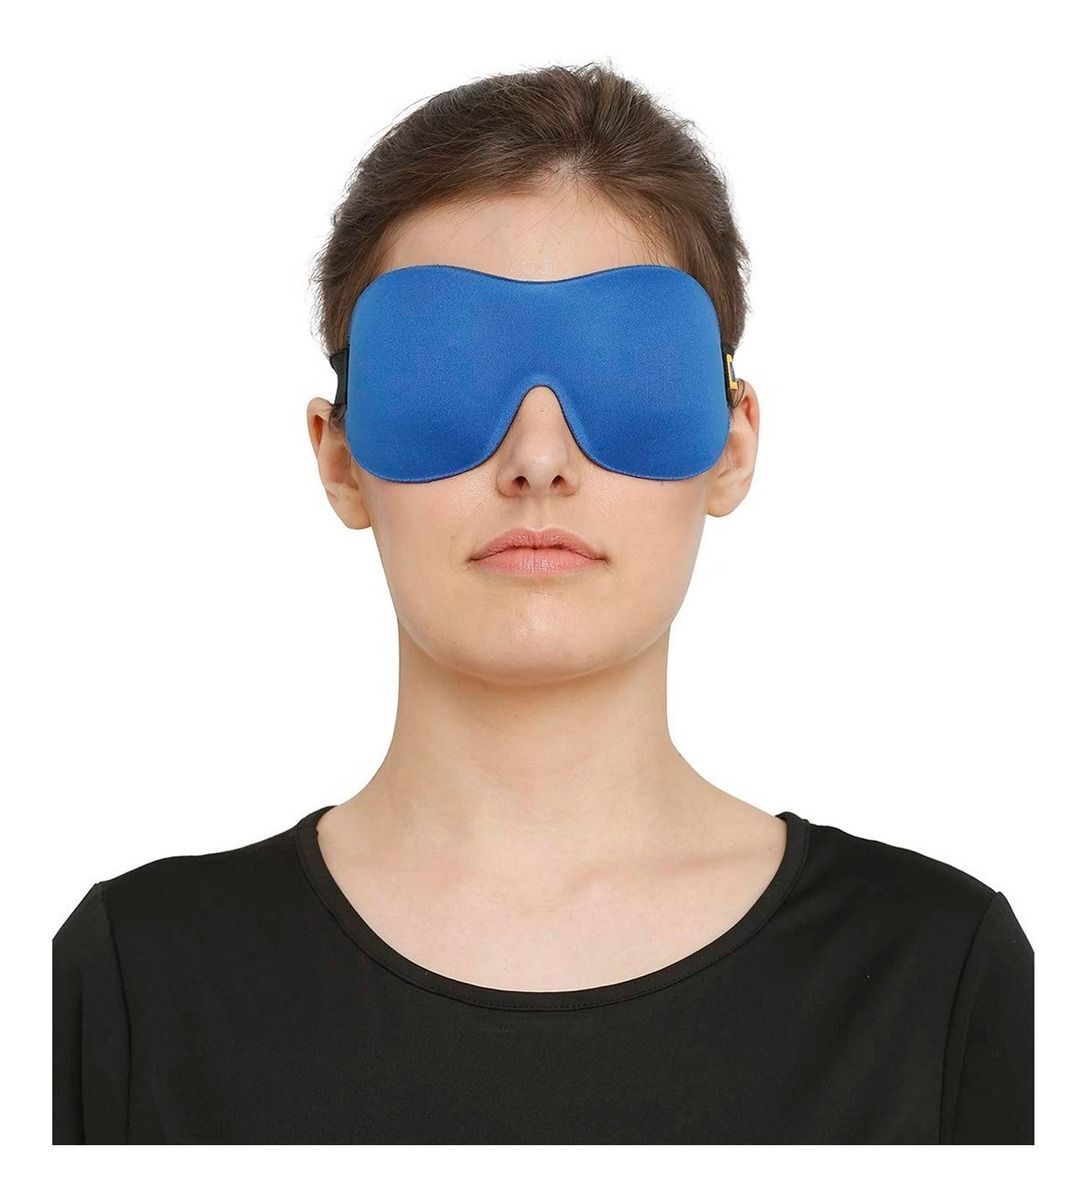 TRAVEL BLUE Antifaz Mascara Ajustable Para Viaje Dormir Descanso De Ojos